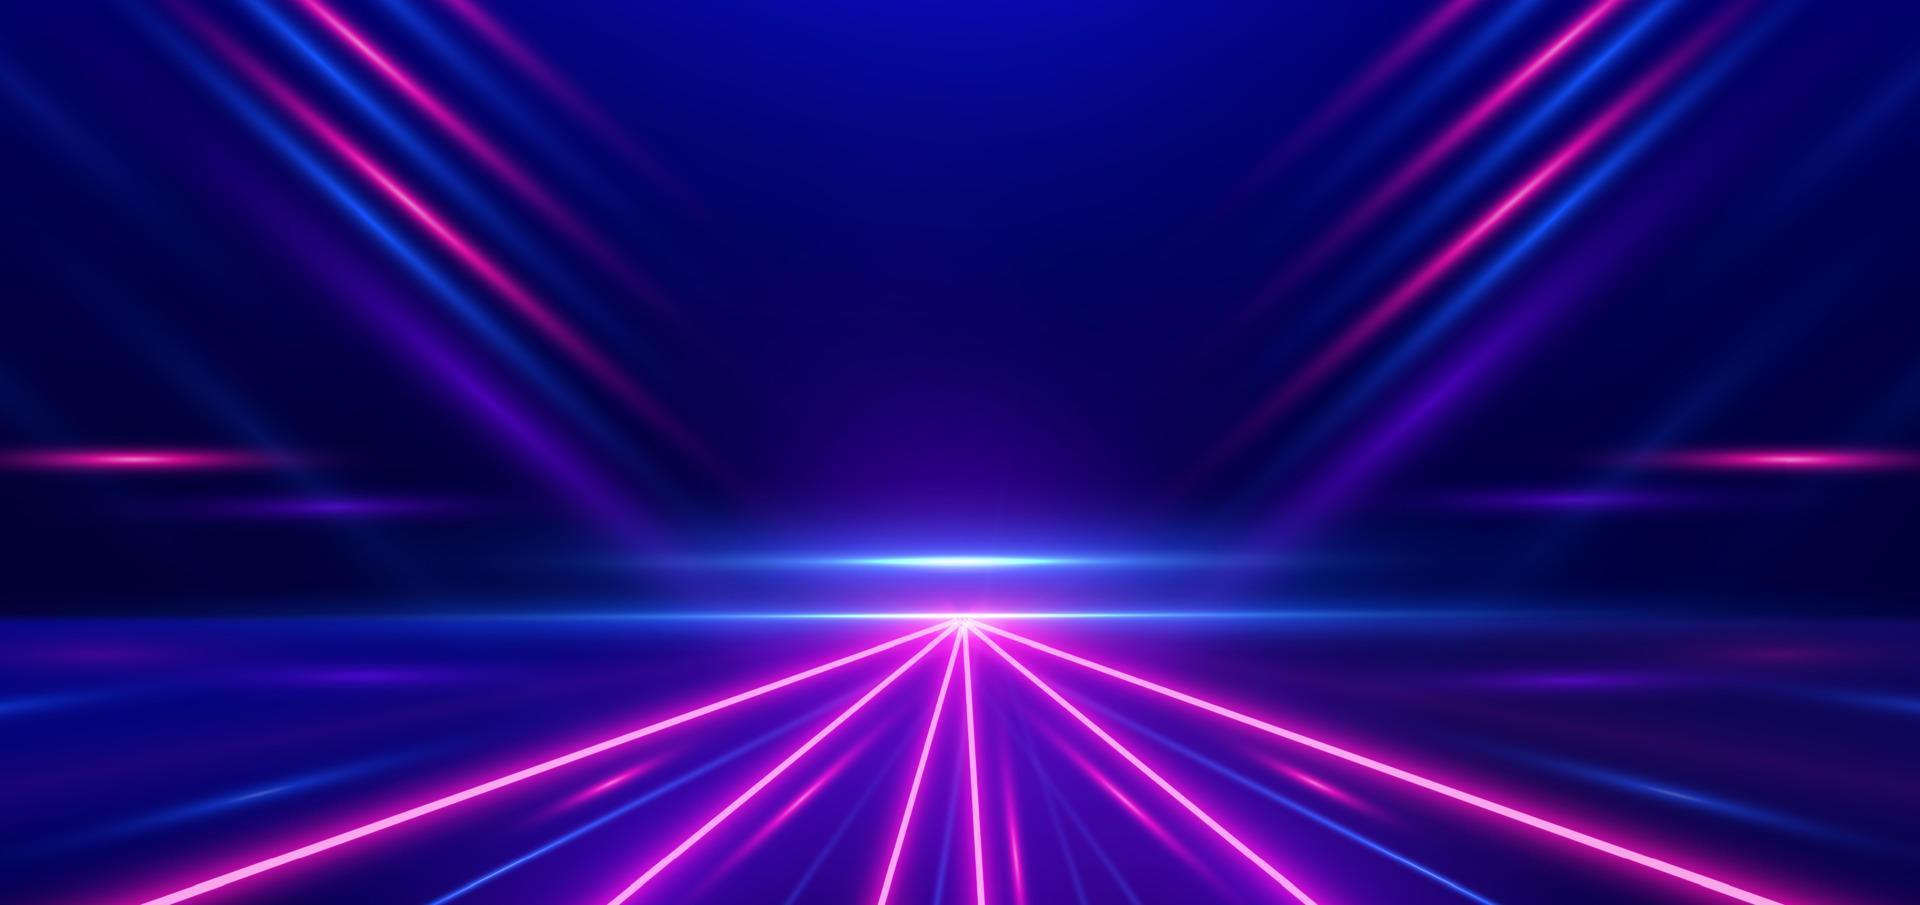 abstract technologie futuristische gloeiend neon blauw en roze licht lijnen met snelheid beweging verder gaan donker blauw achtergrond. vector